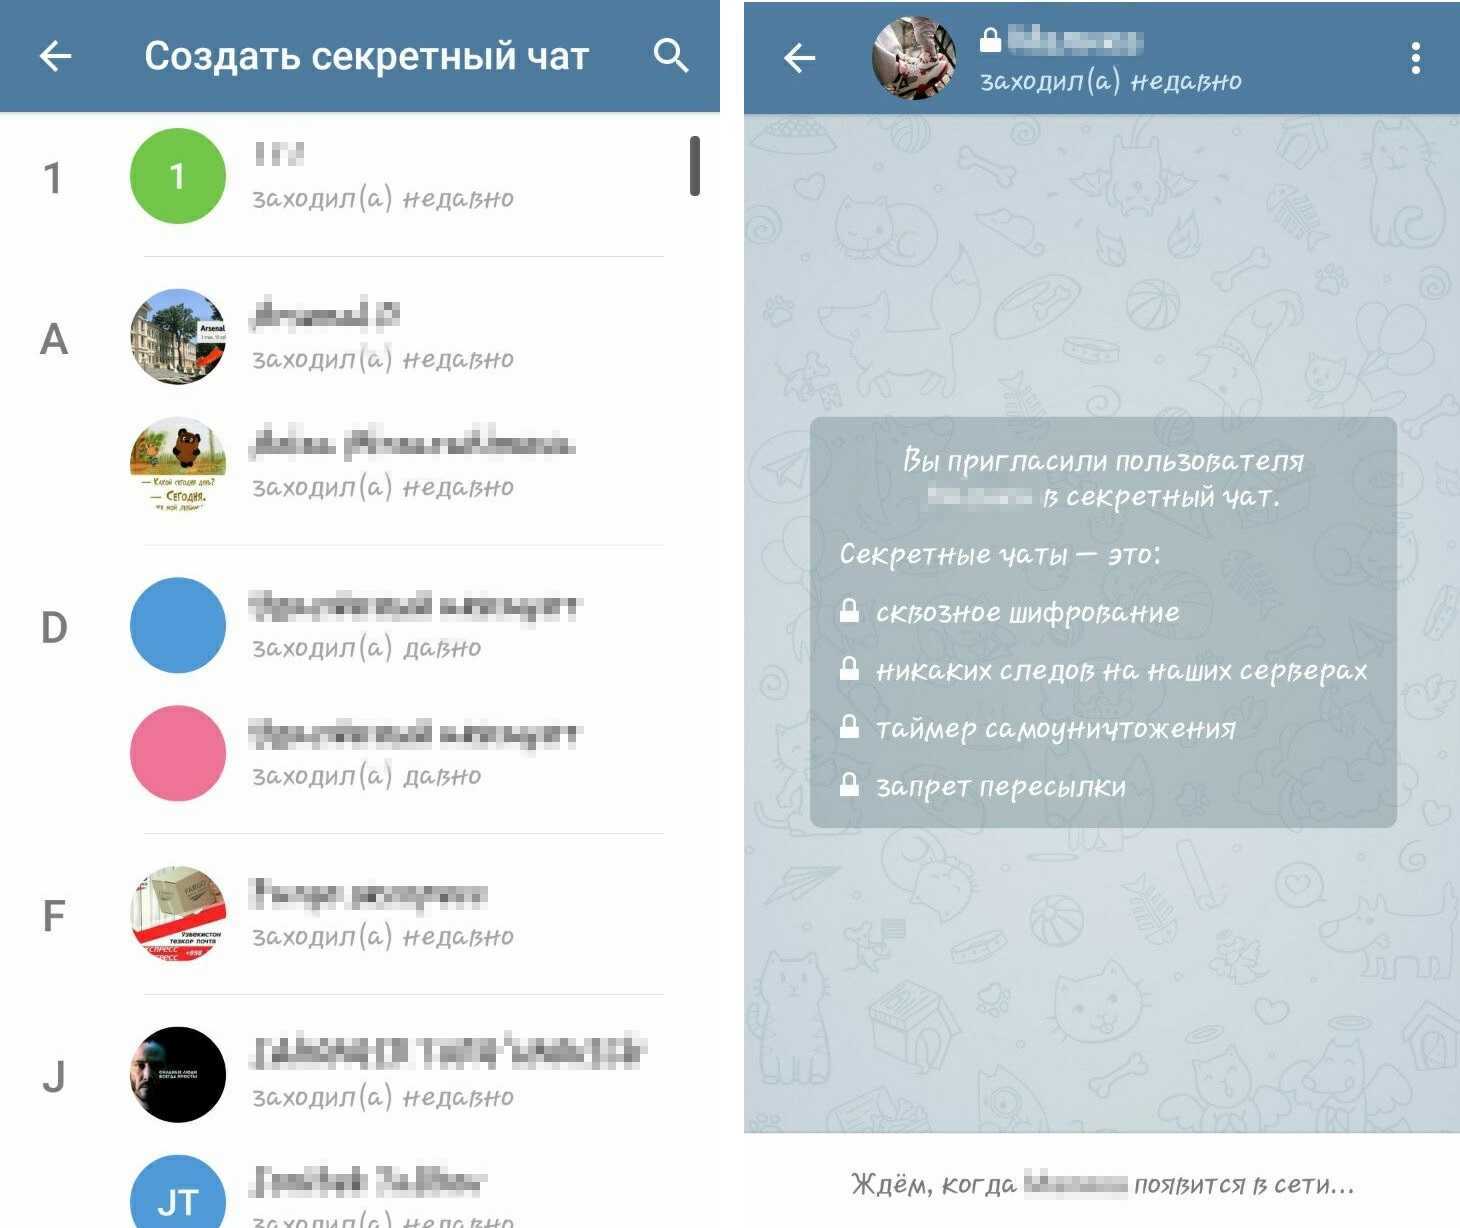 Телеграмм мессенджер скачать бесплатно на русском языке на андроид фото 106